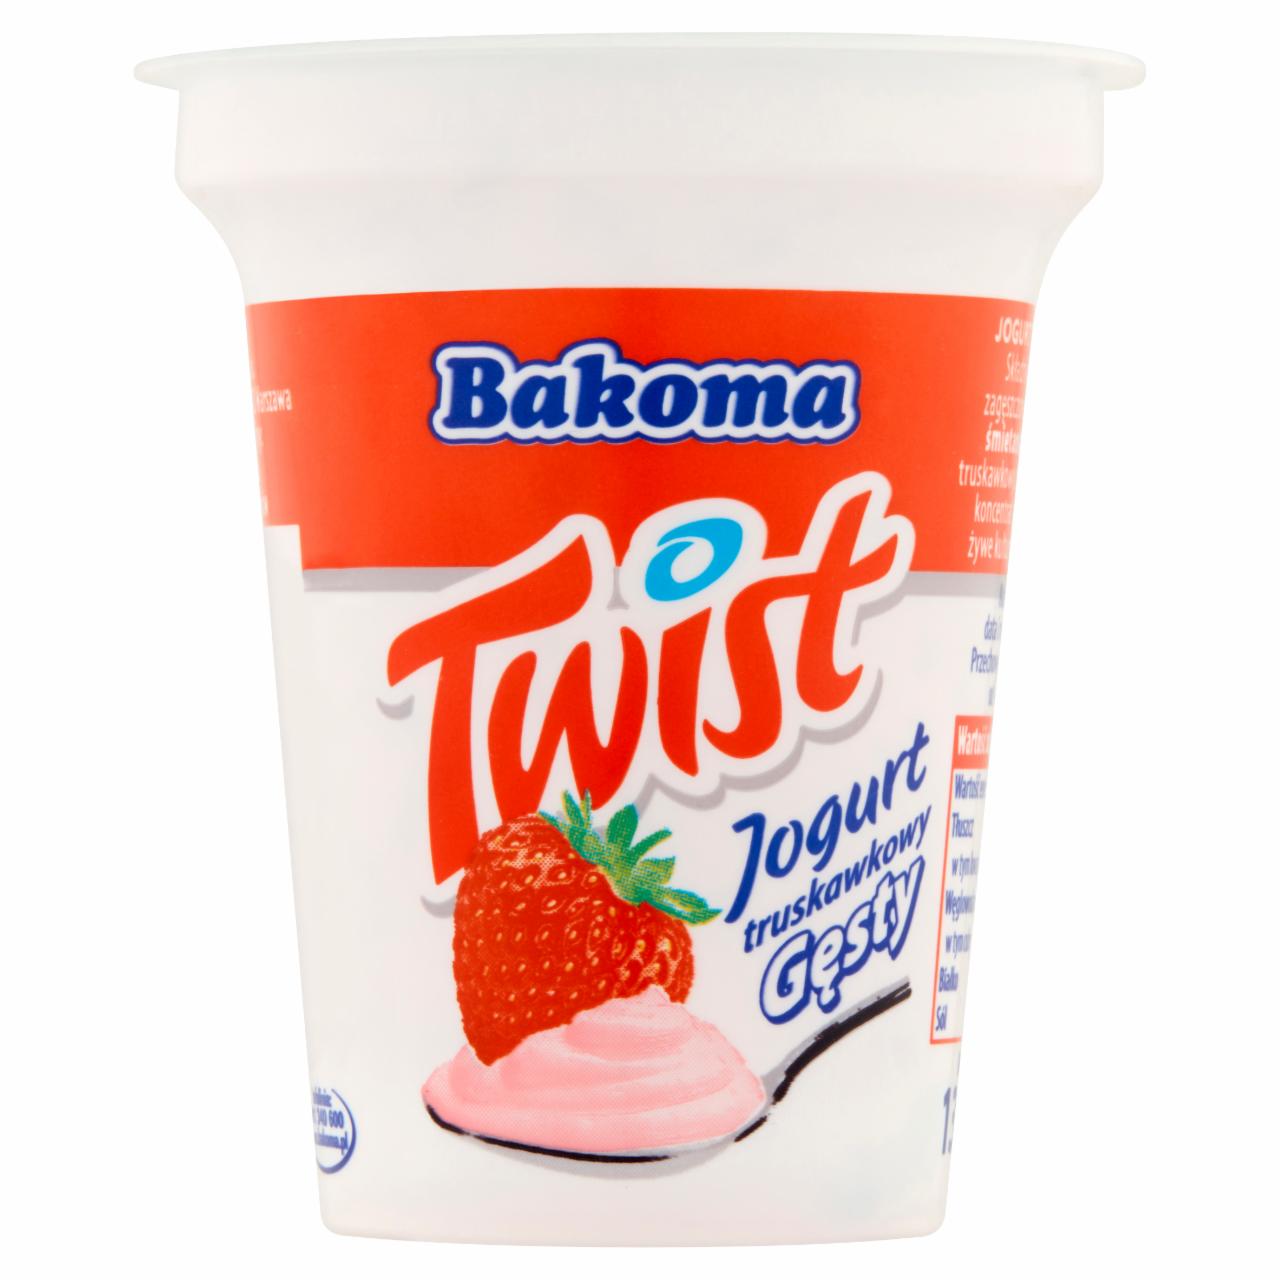 Zdjęcia - Bakoma Twist Jogurt truskawkowy gęsty 135 g